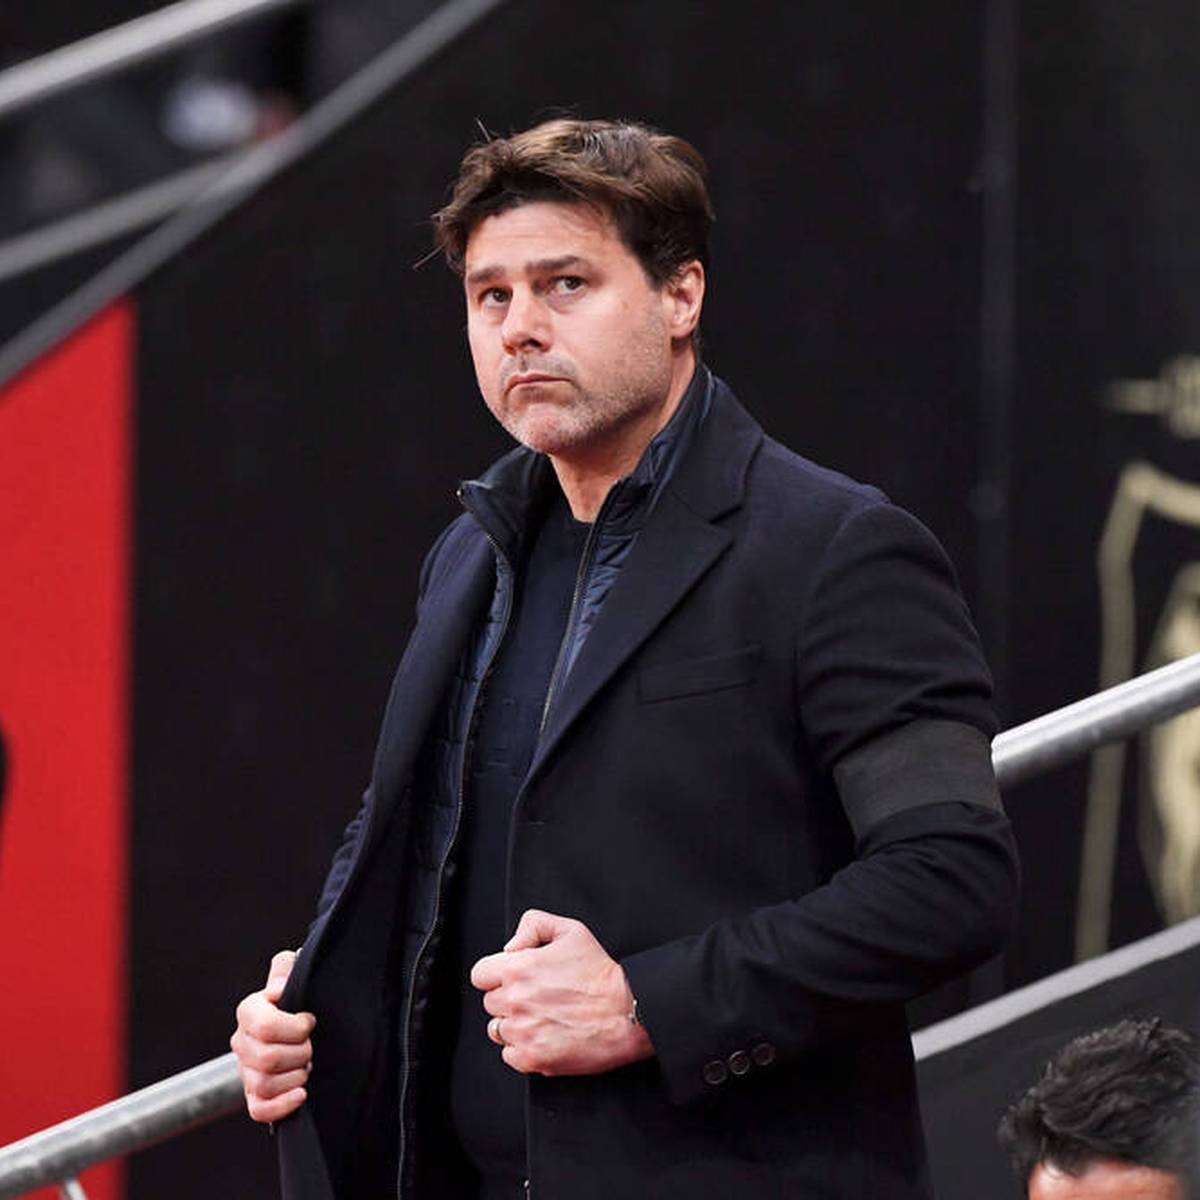 Nun ist es offiziell: Paris Saint-Germain hat Trainer Mauricio Pochettino entlassen. Unmittelbar nach der Meldung wurde bereits der neue Trainer vorgestellt - eine brisante Wahl.